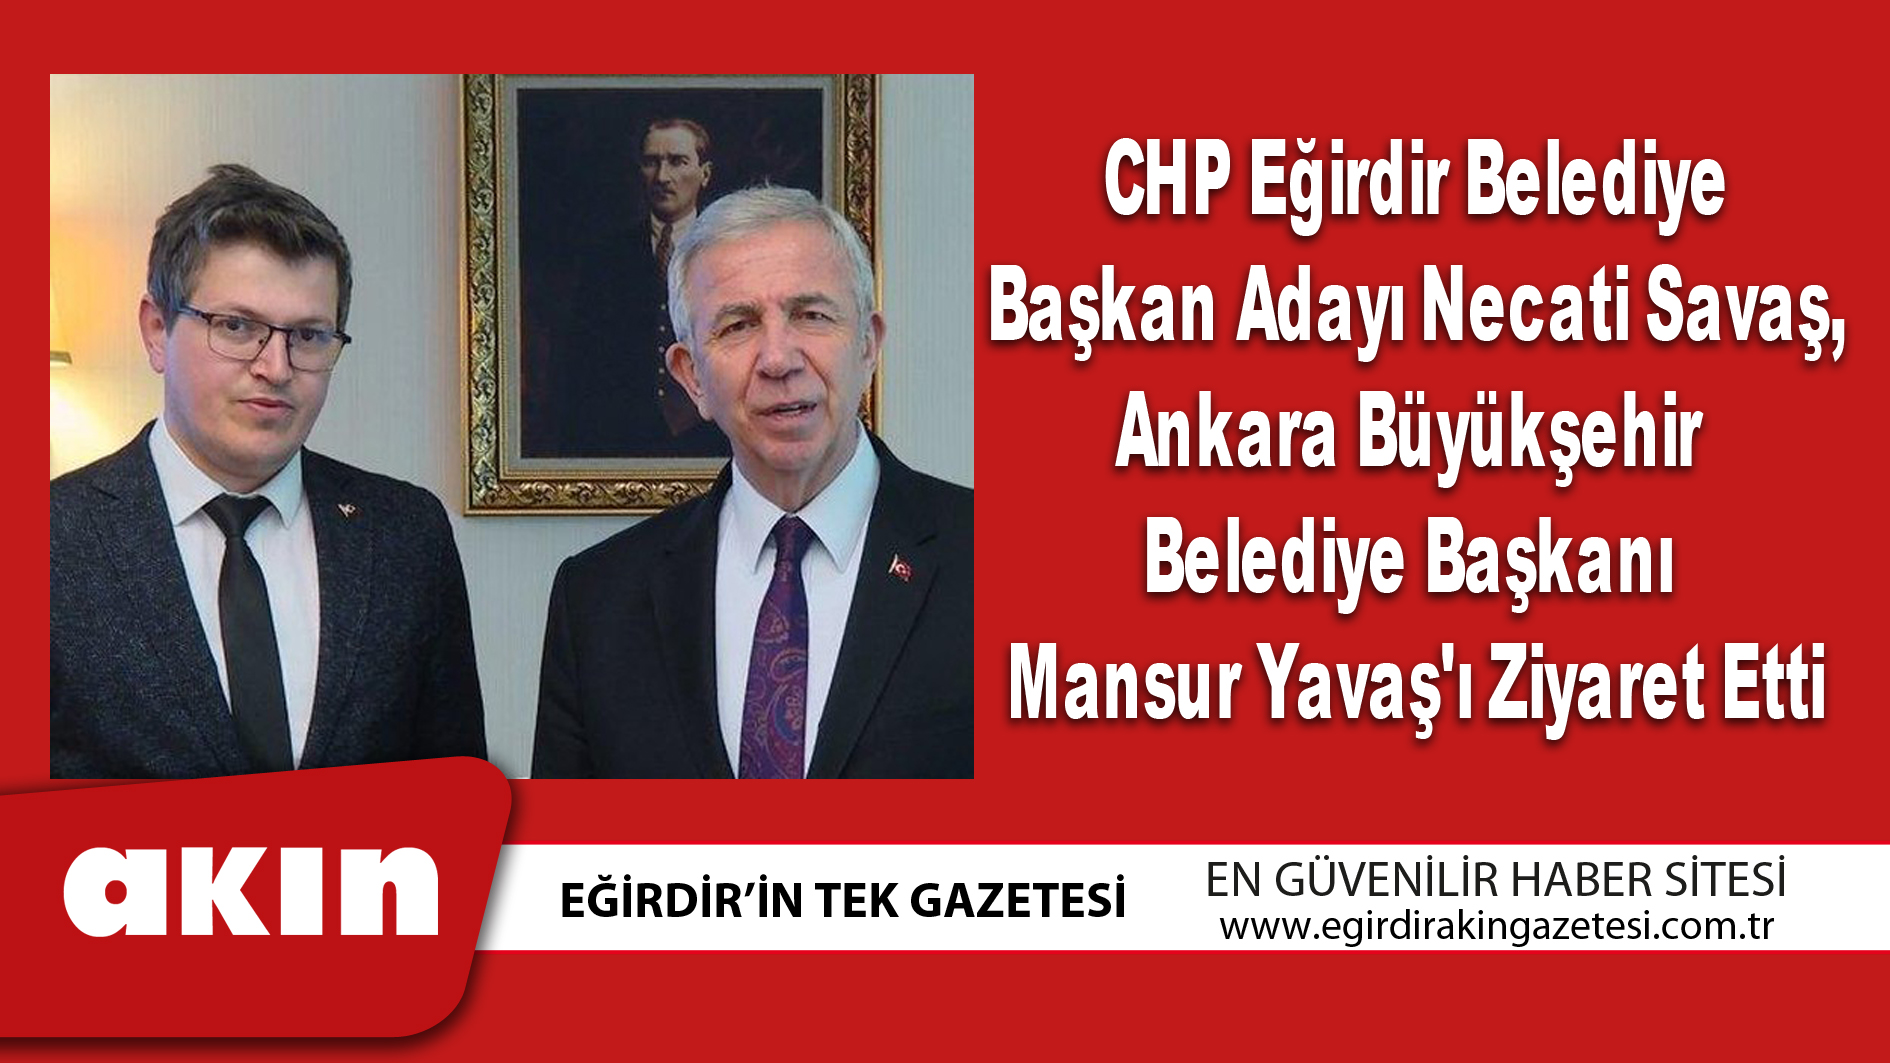 eğirdir haber,akın gazetesi,egirdir haberler,son dakika,CHP Eğirdir Belediye Başkan Adayı Necati Savaş,  Ankara Büyükşehir Belediye Başkanı Mansur Yavaş'ı Ziyaret Etti